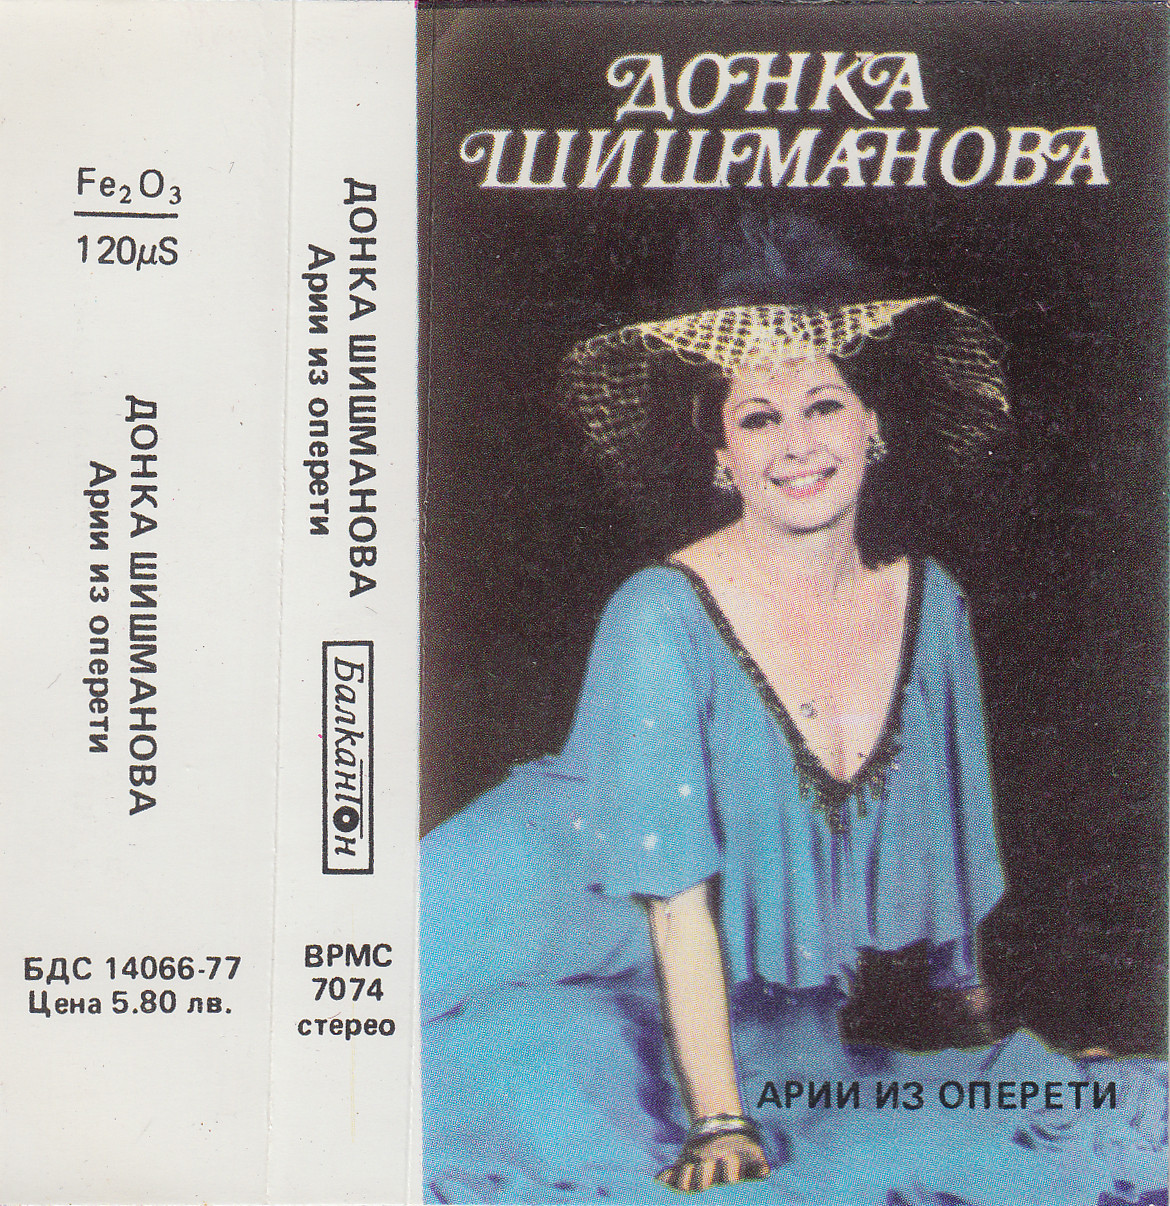 Донка Шишманова - сопран. Арии из оперети